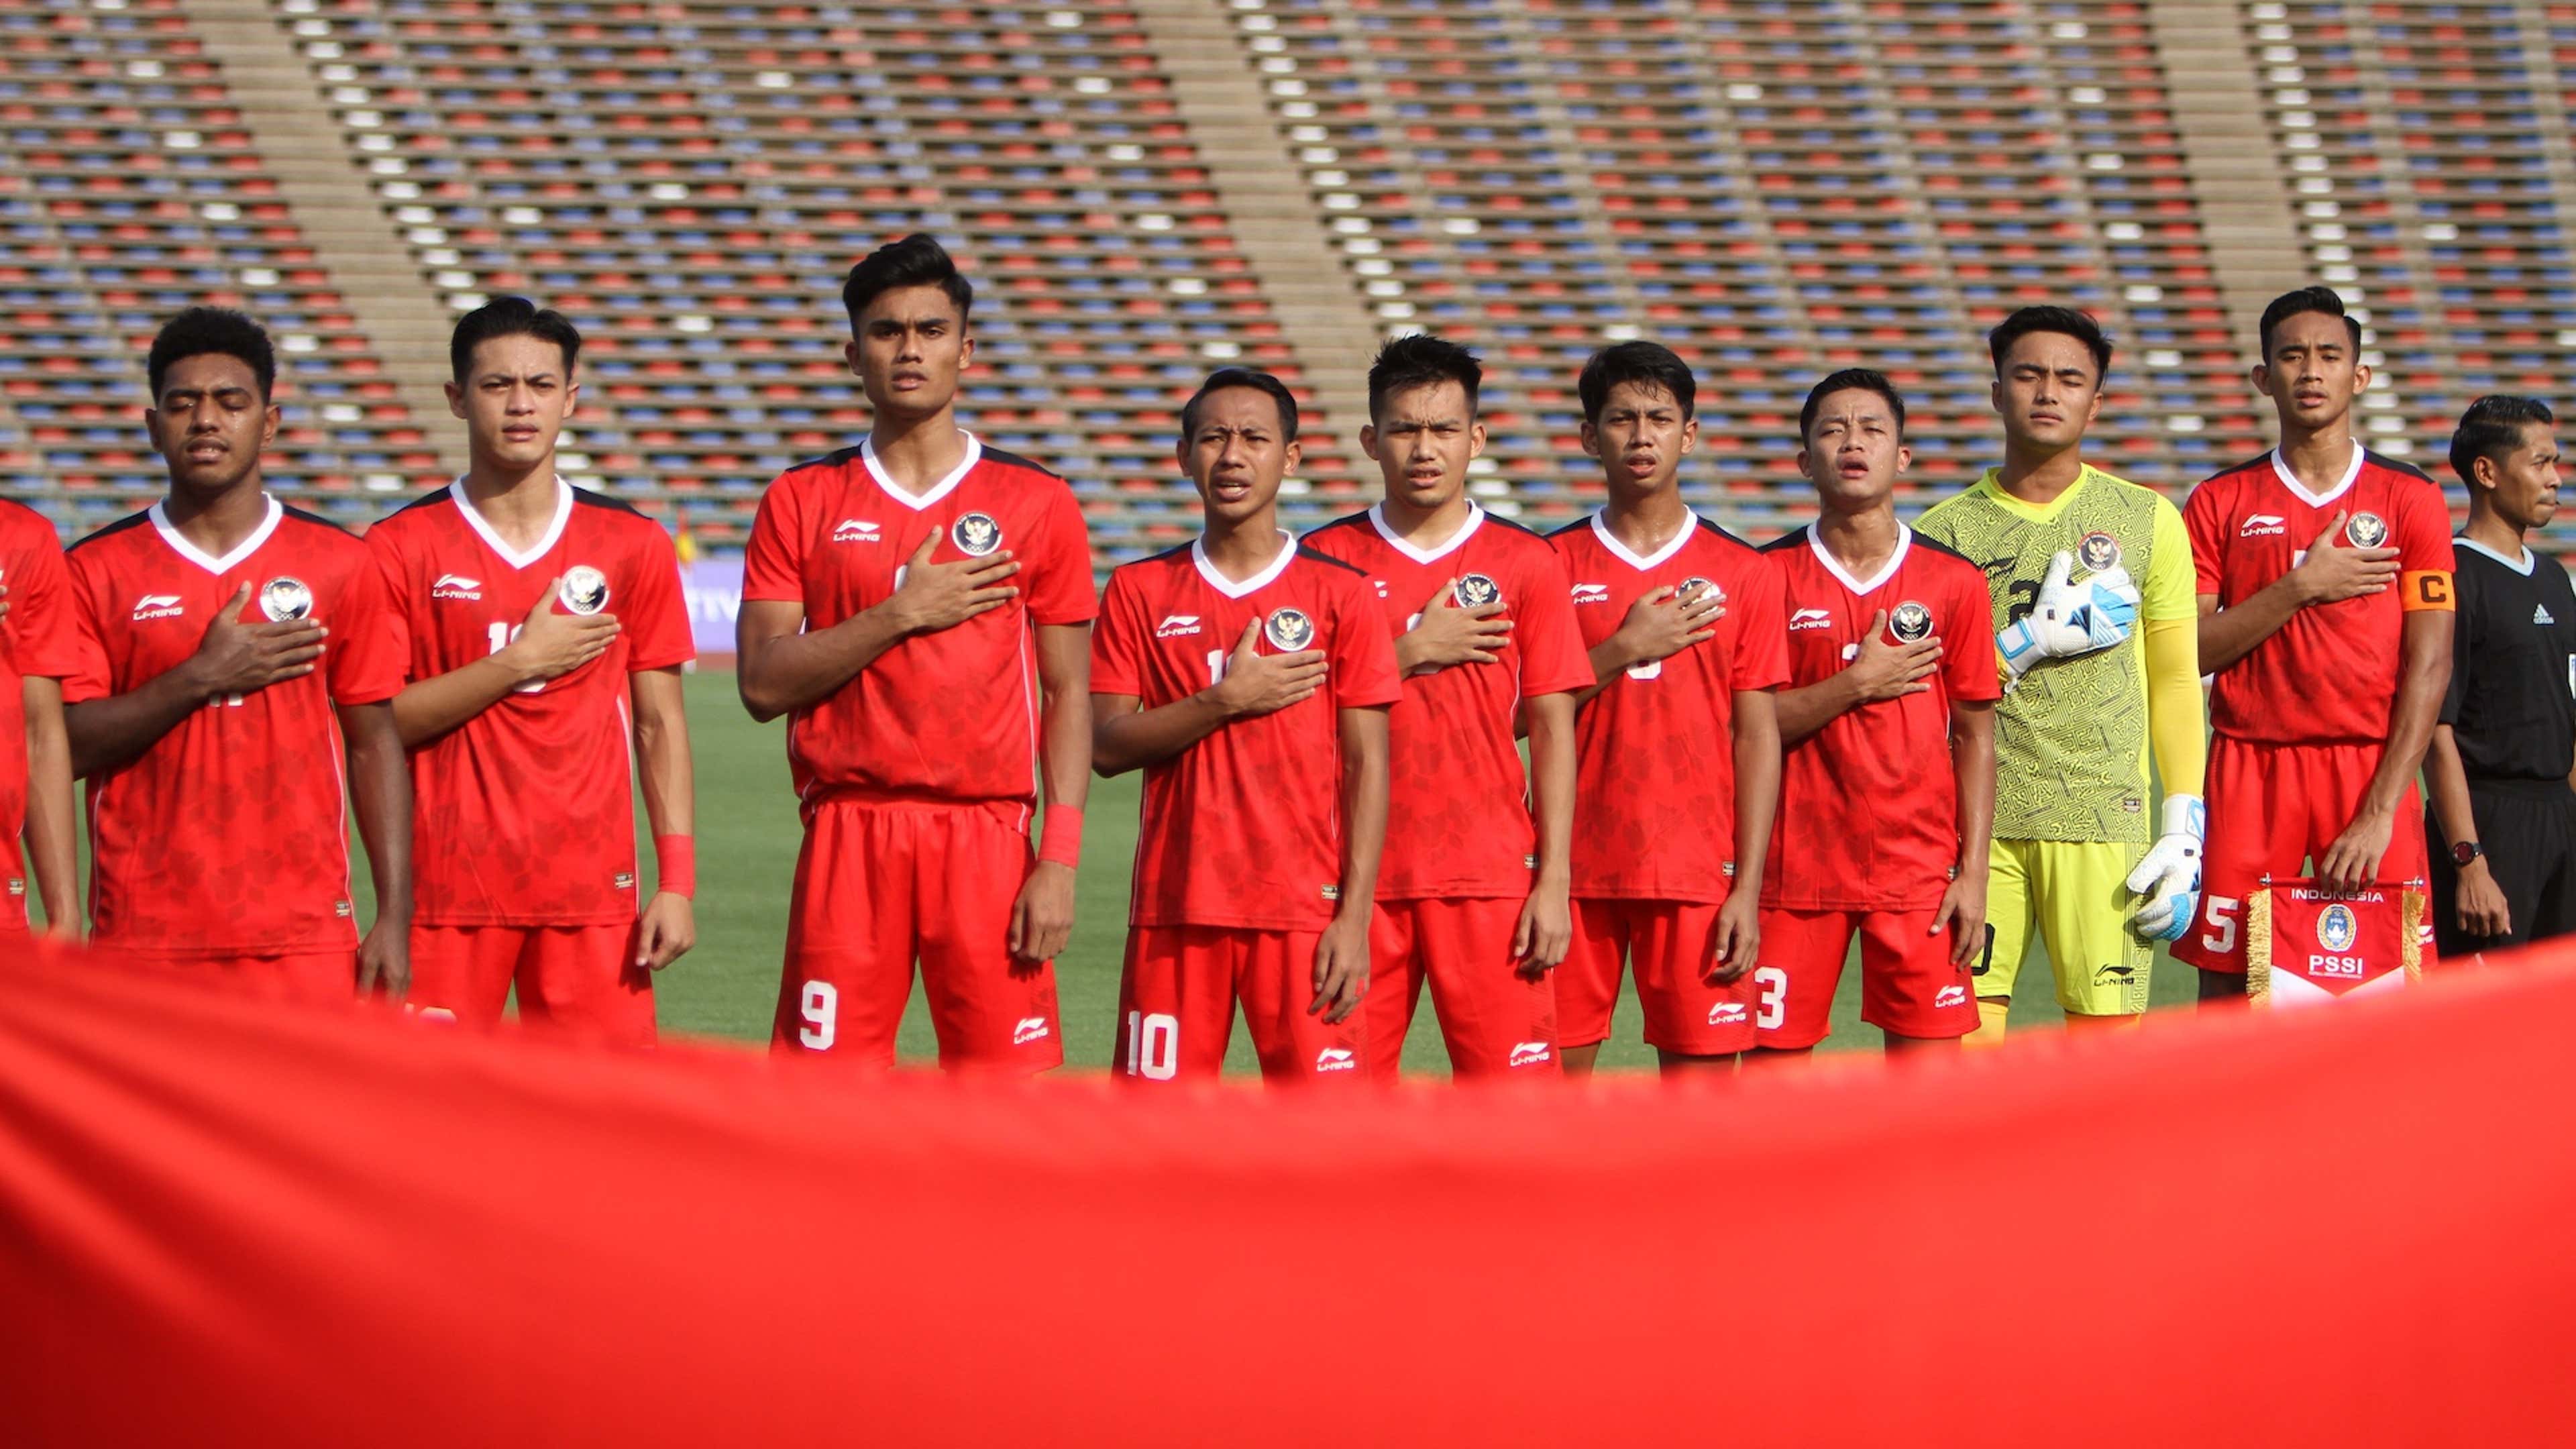 Jadwal Malaysia U-23 Vs Indonesia U-23: Live Streaming & Siaran Langsung TV, Prediksi Skor | Goal.com Indonesia